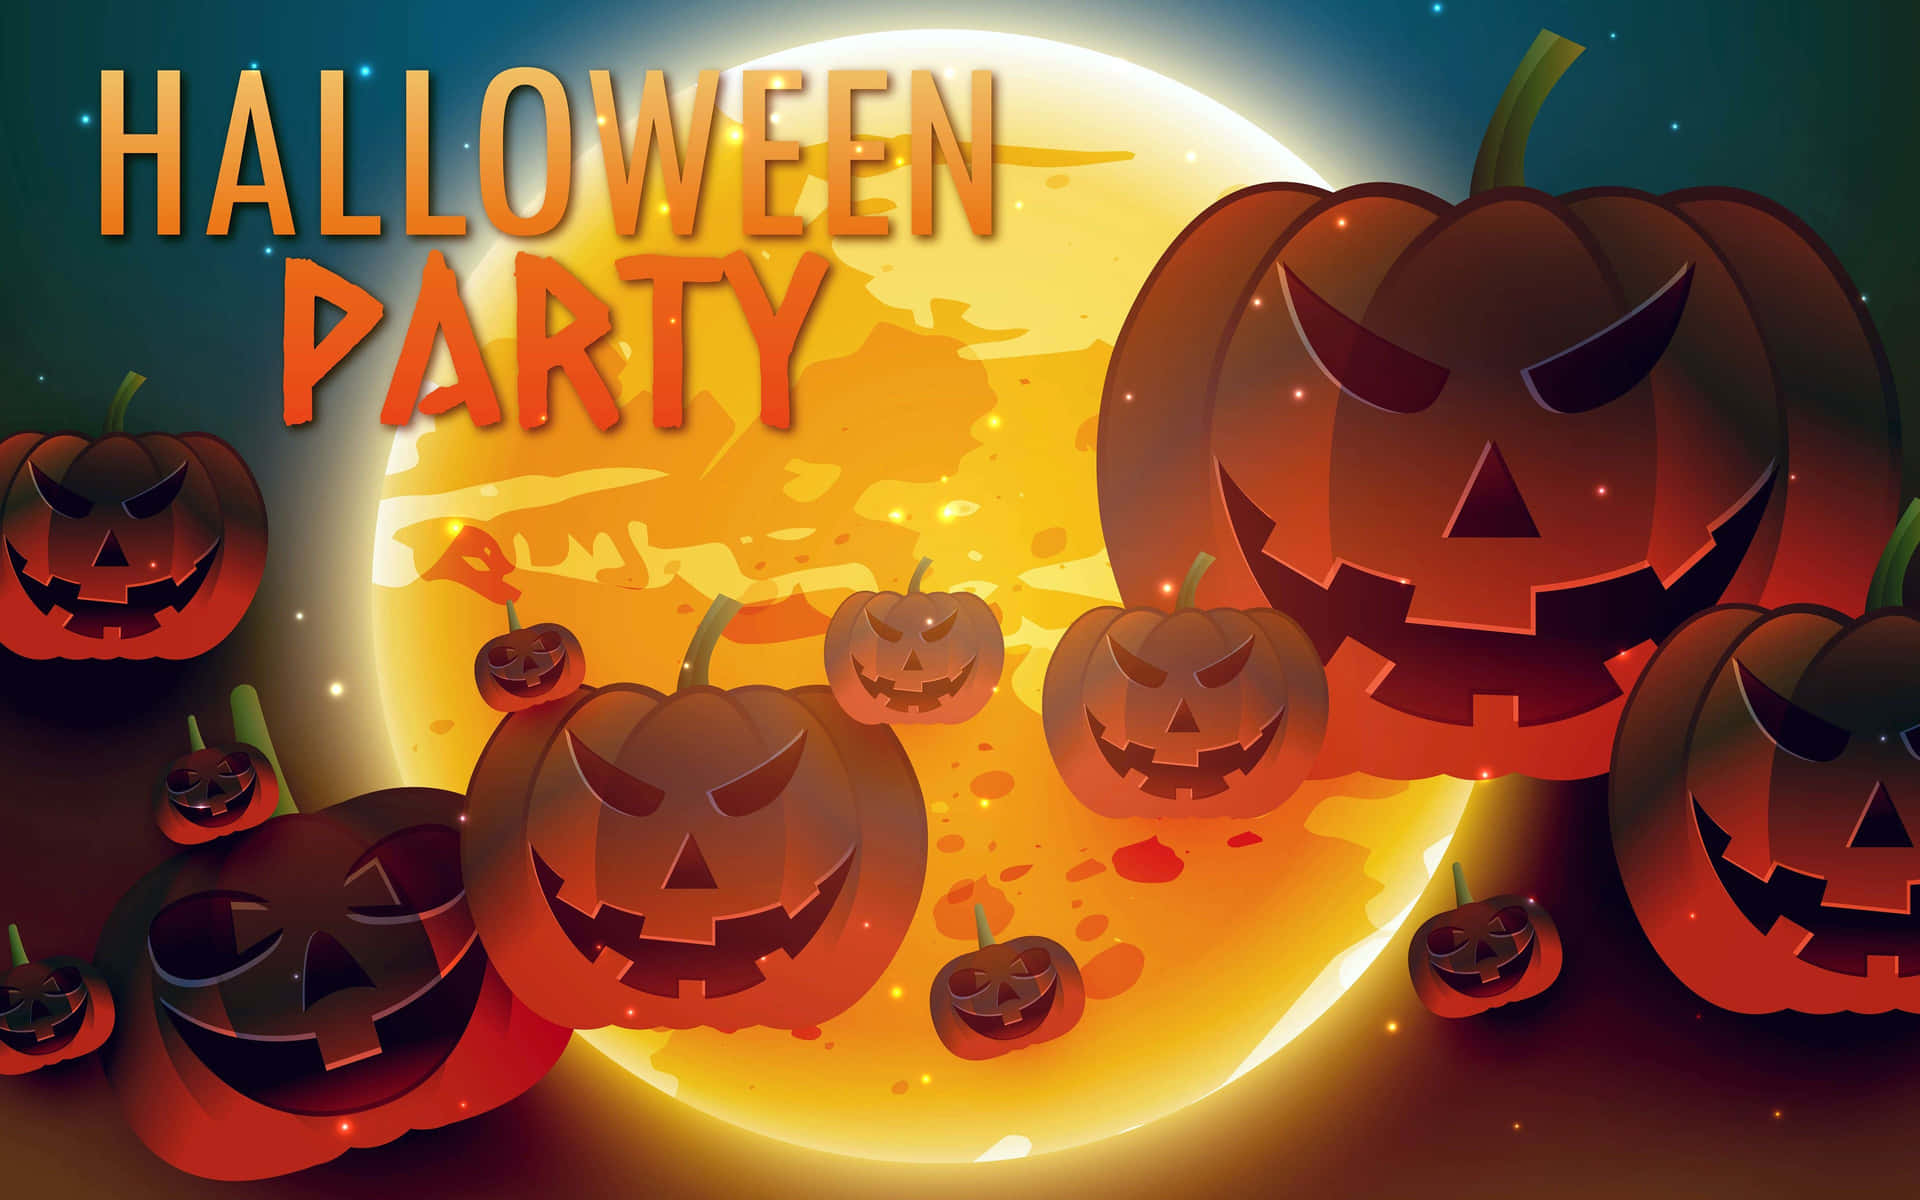 Smerig Actief dood gaan Download Halloween Party Pictures | Wallpapers.com